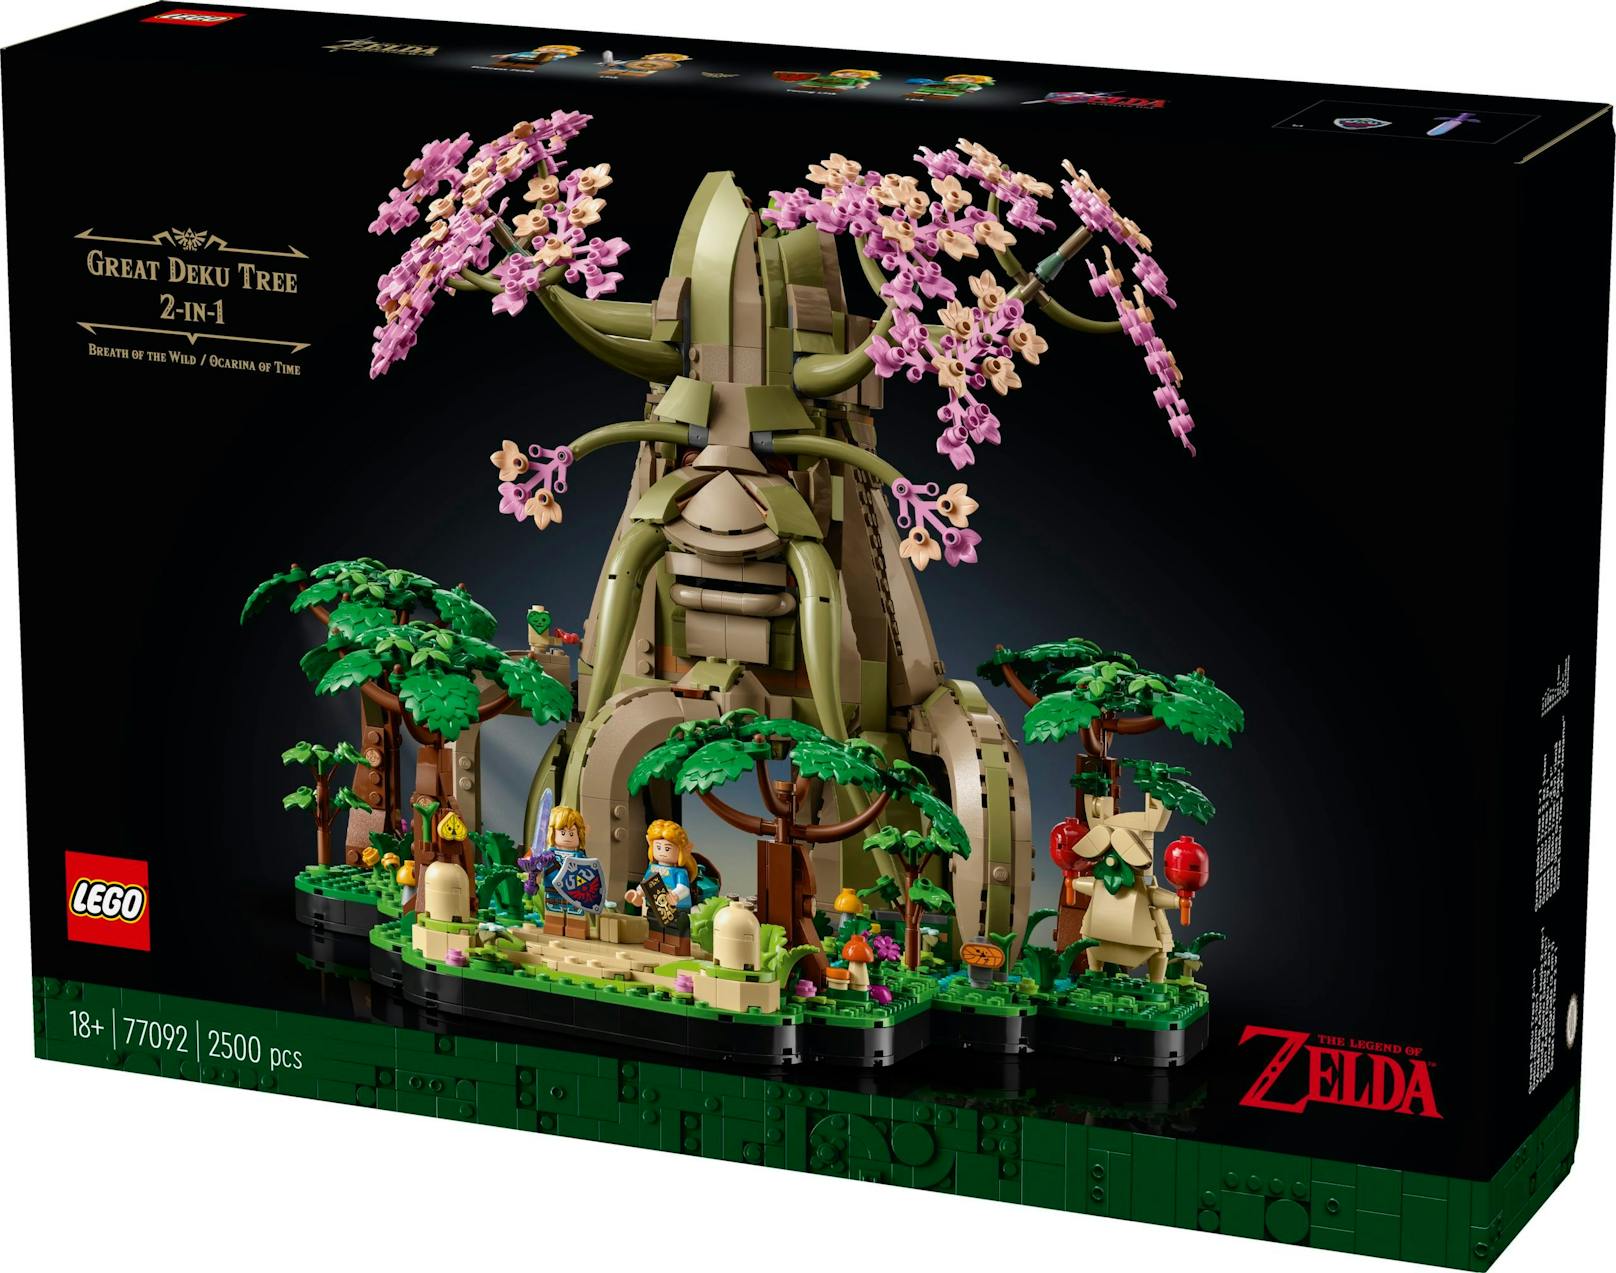 ... "Großer Deku"-Baum aus "The Legend of Zelda: Ocarina of Time" oder als Version aus "The Legend of Zelda: Breath of the Wild" gebaut werden. 